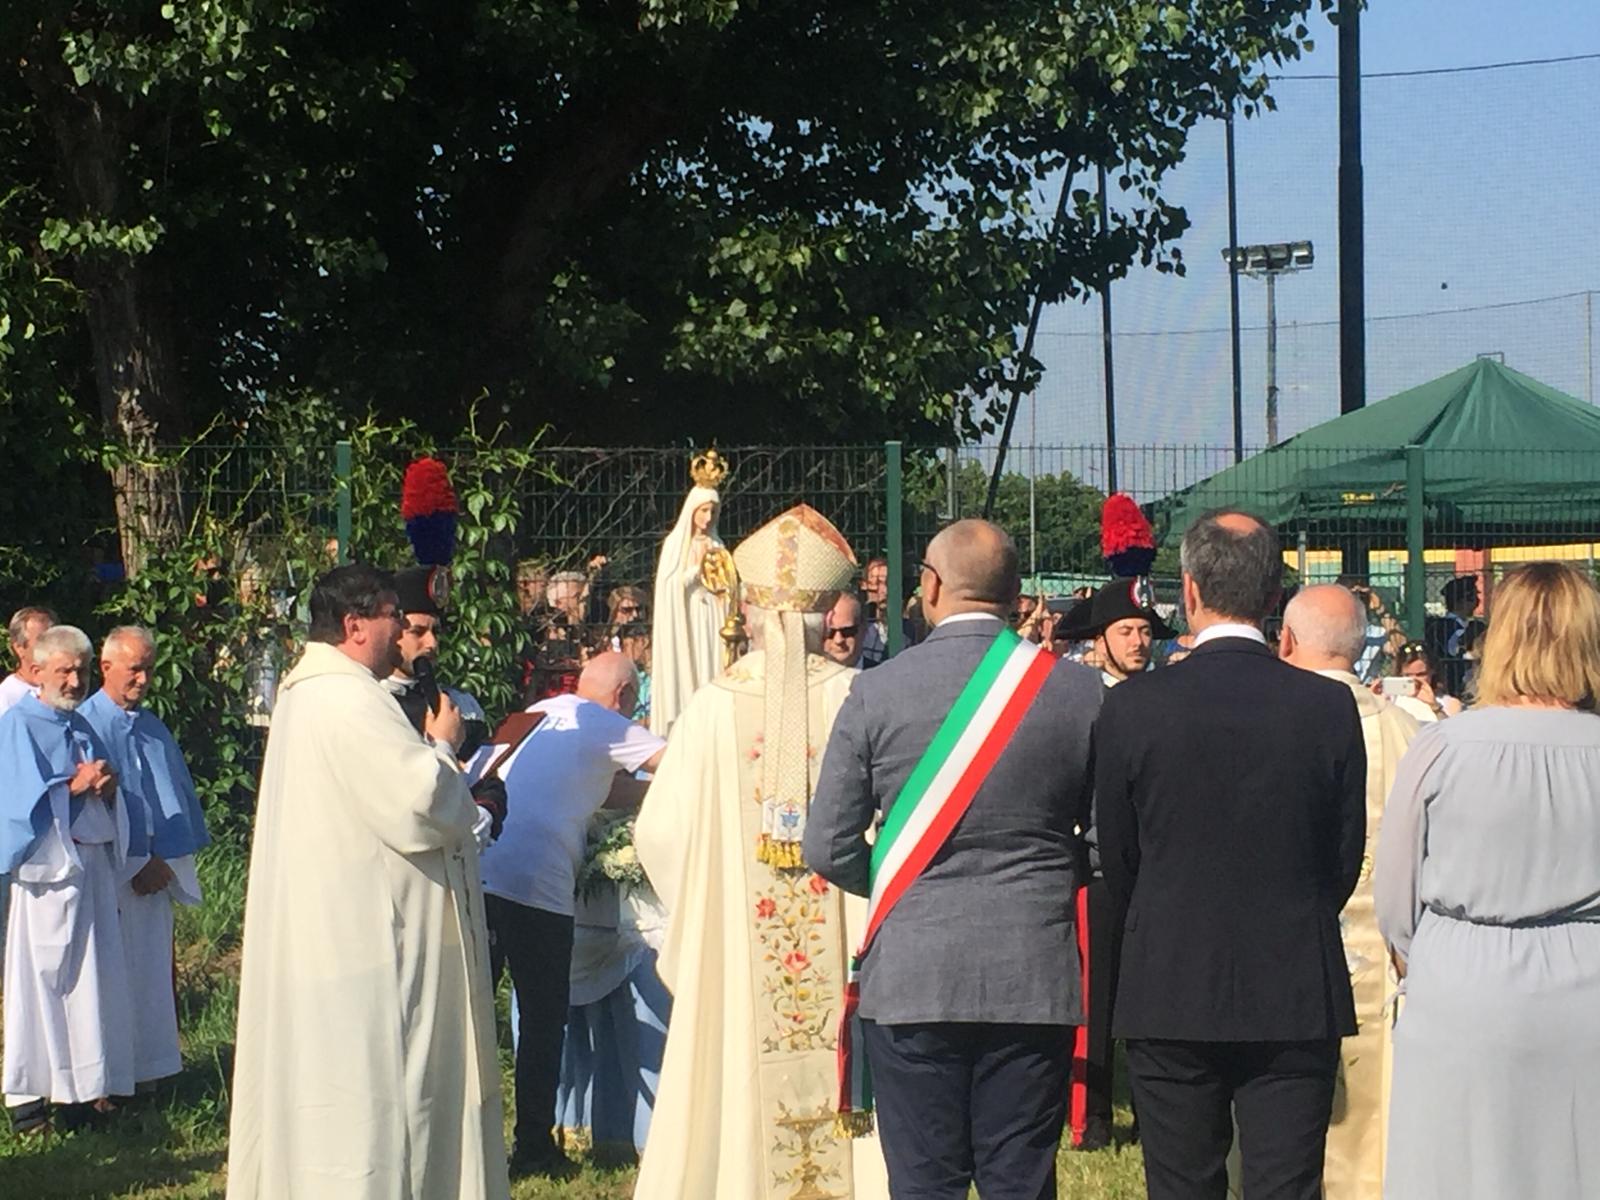 Madonna pellegrina di Fatima atterra a cernusco sul naviglio